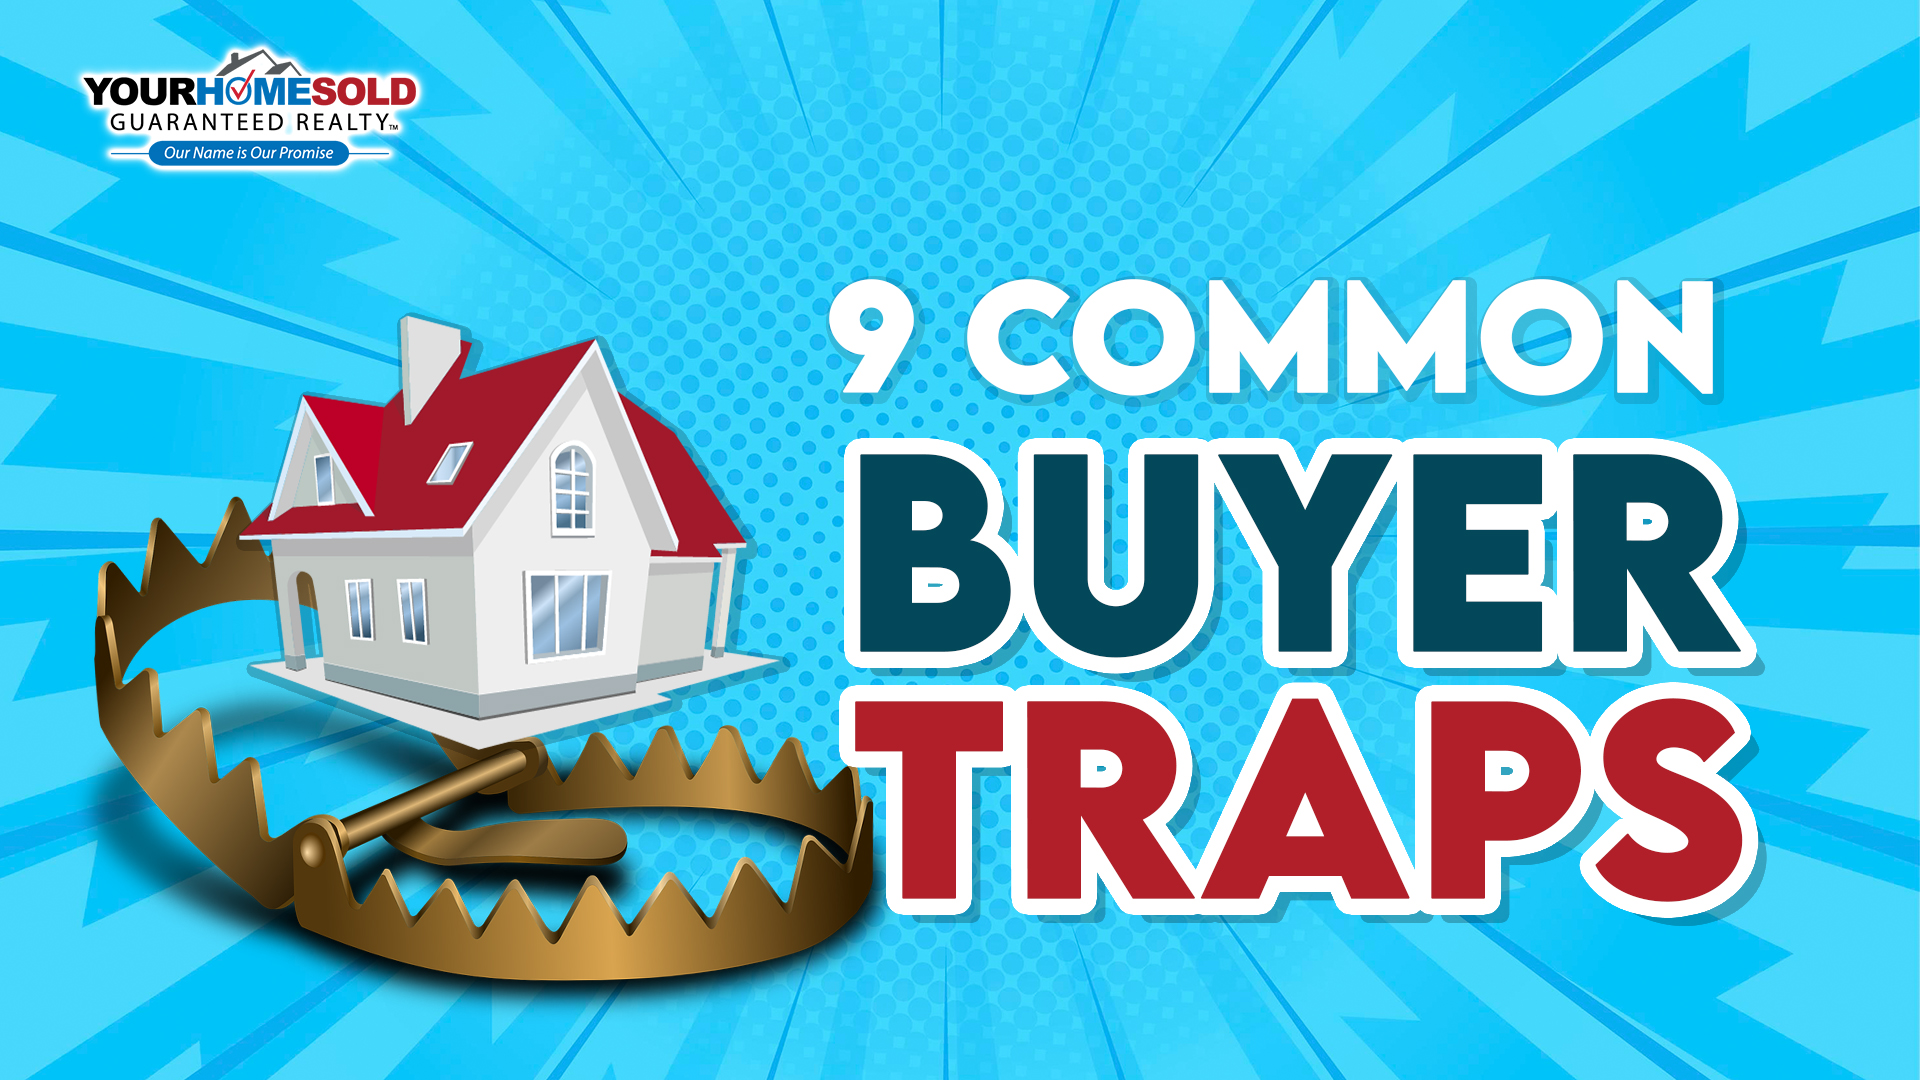 COmmon buyer traps.jpg